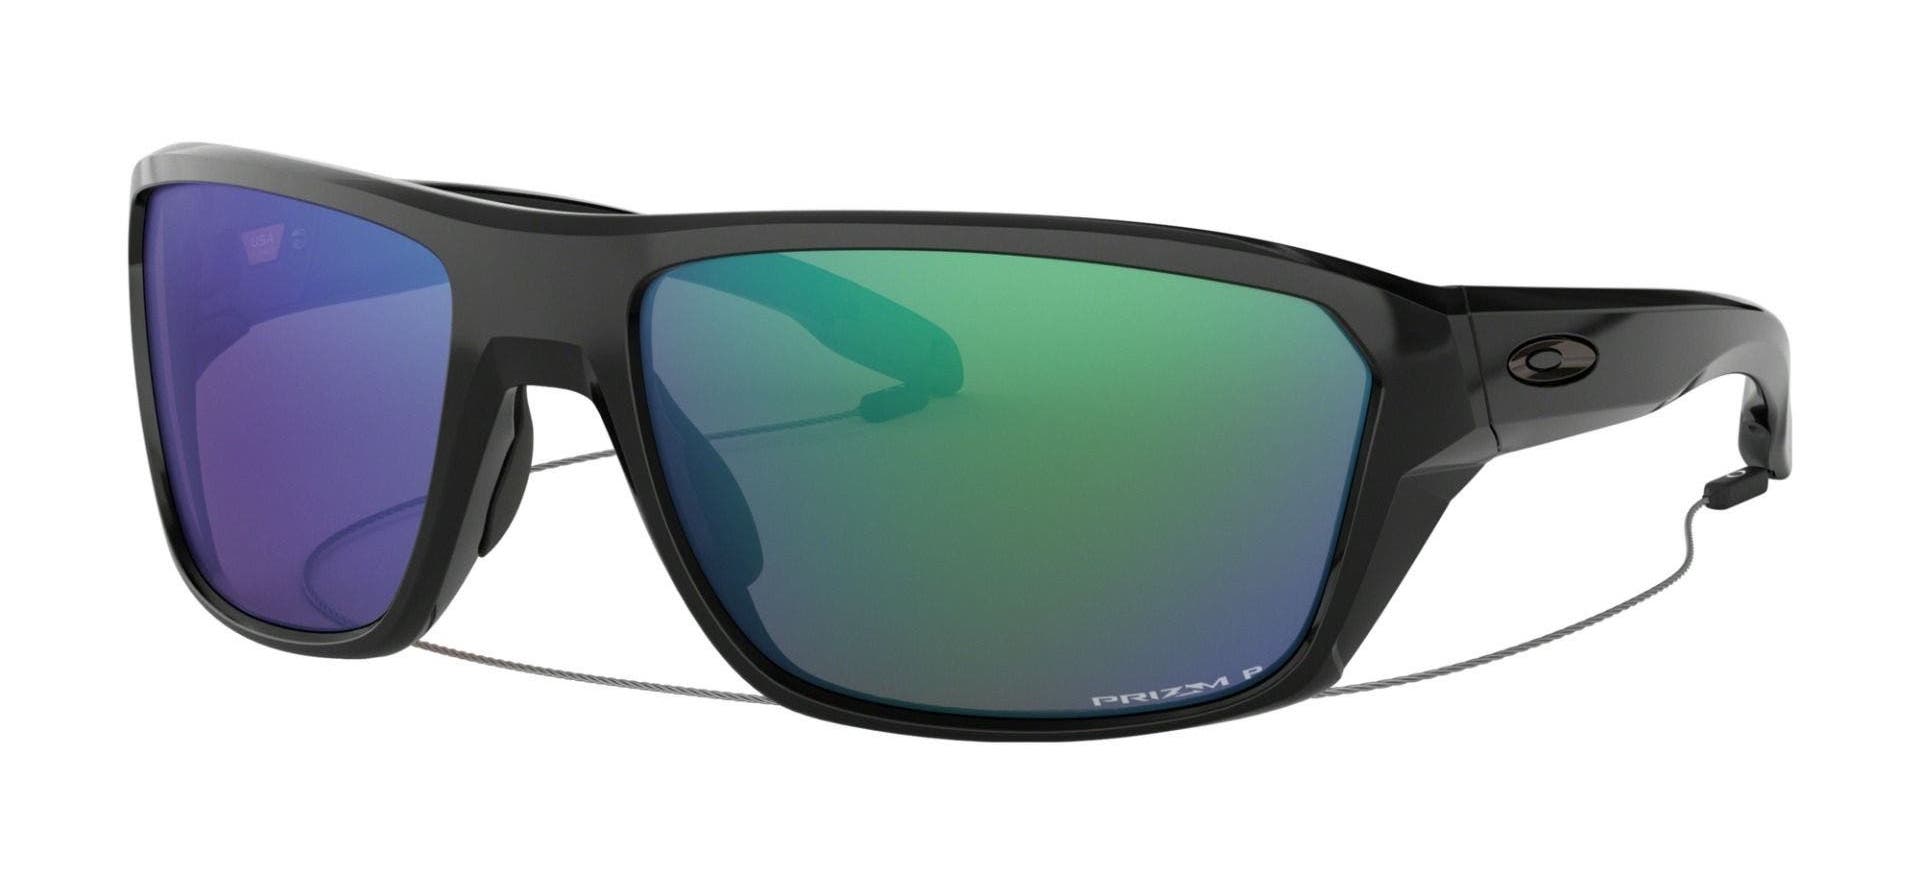 oakley split shot sunglasses in black with prizm bule green lenses